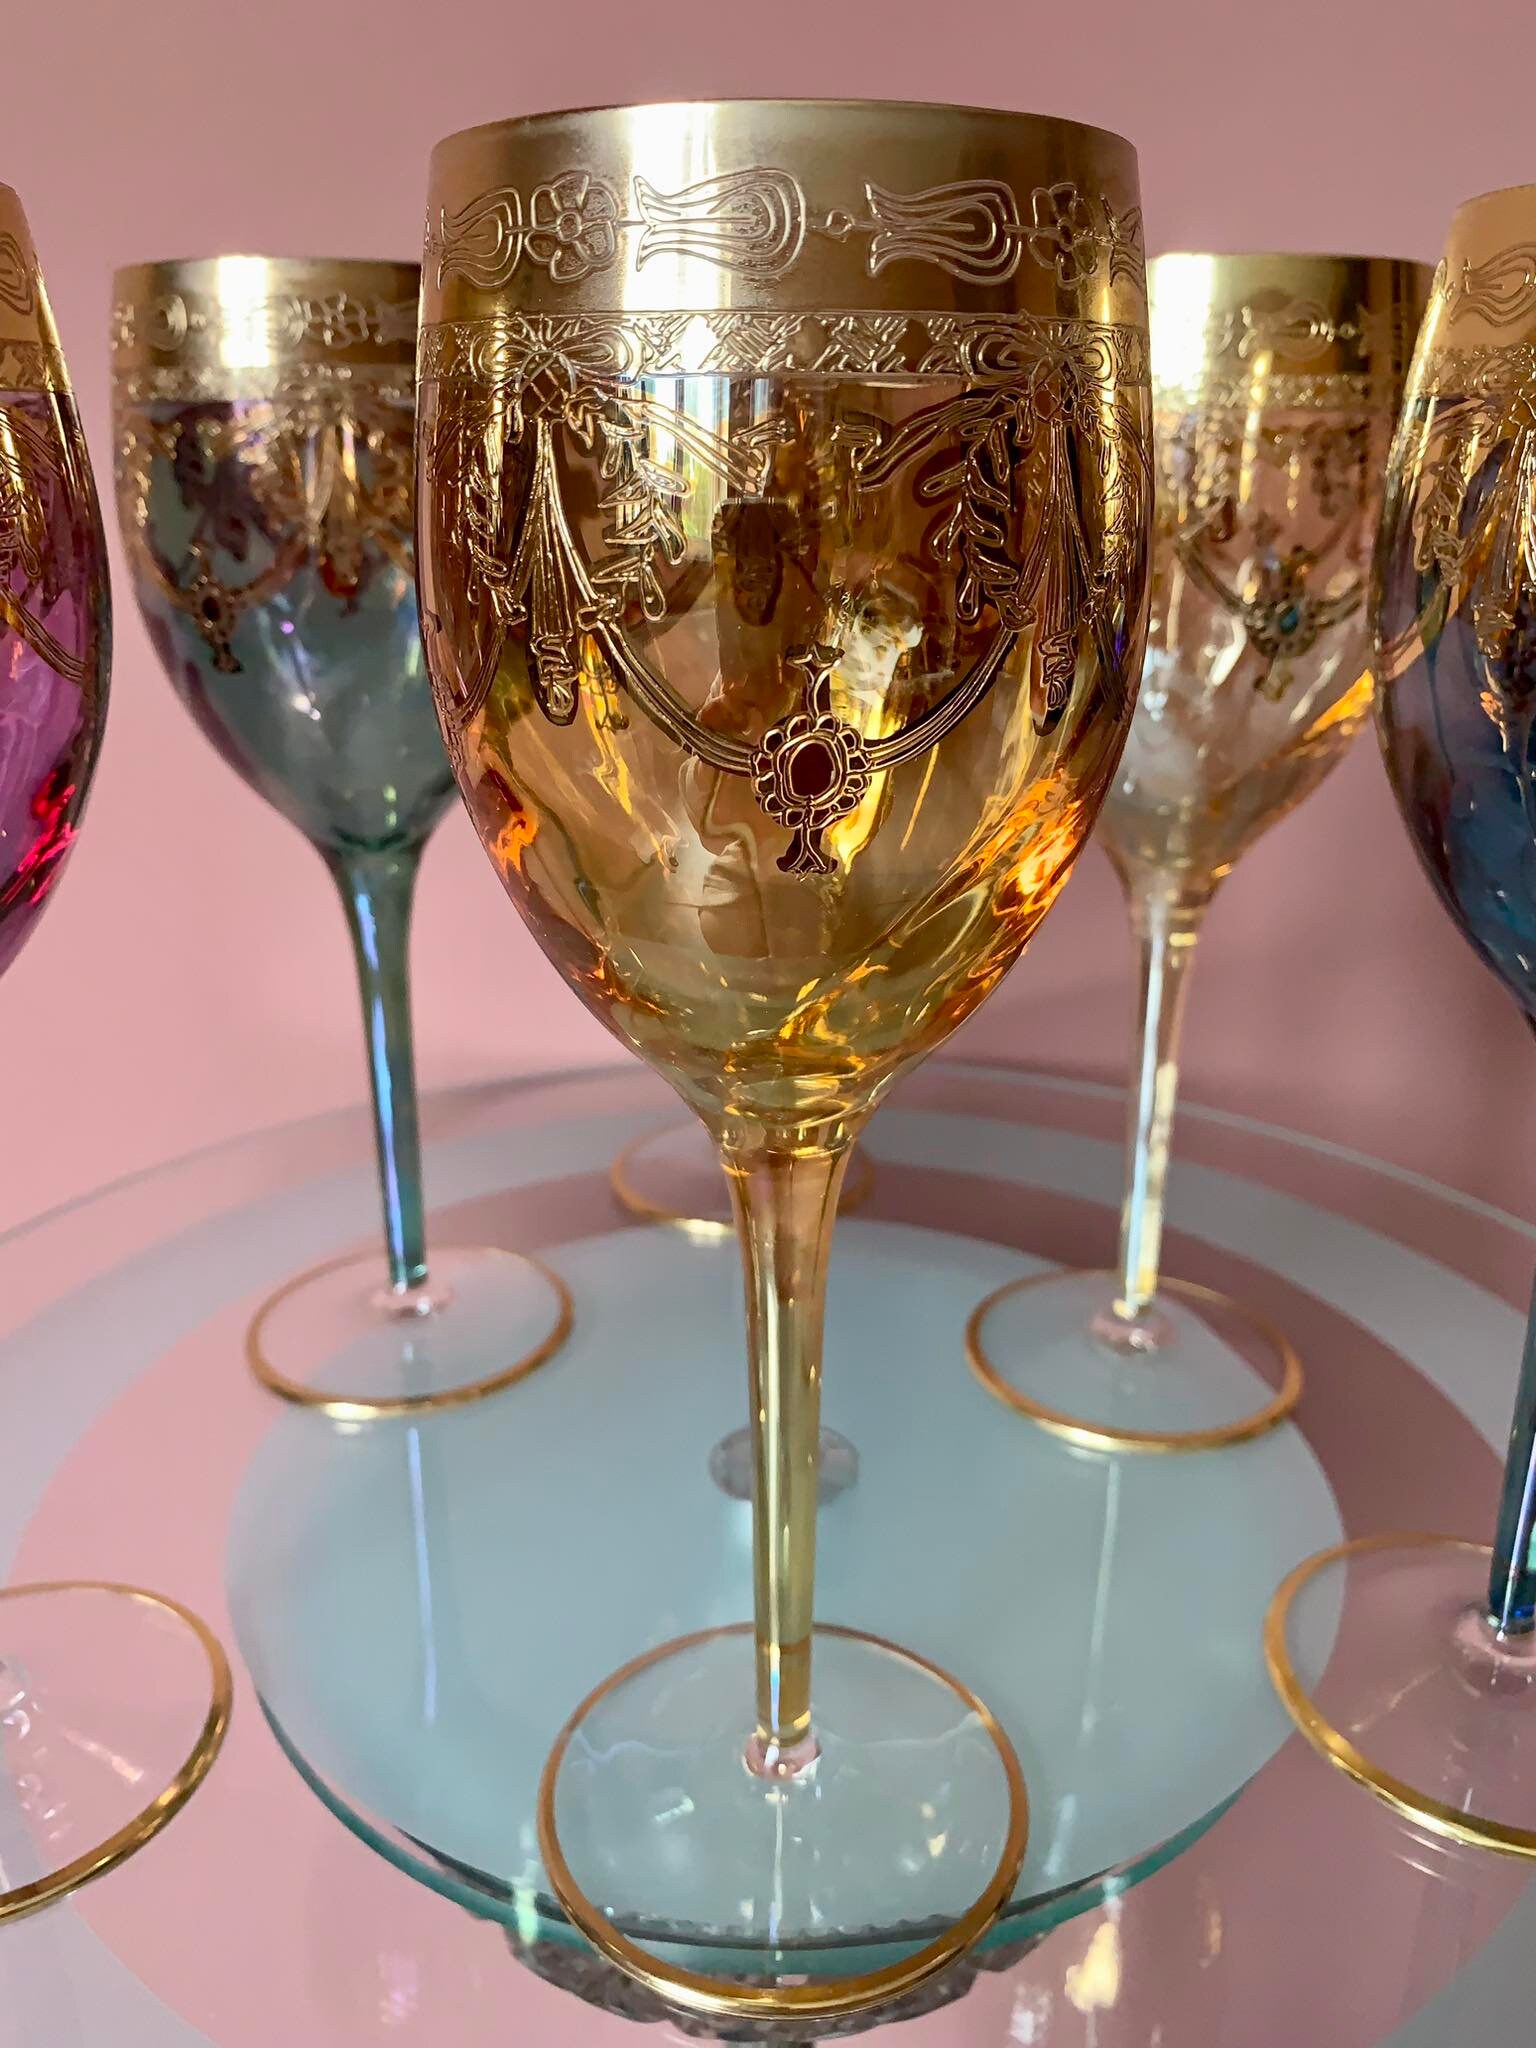 Murano-Style Pioggia Soffice Wine Glasses Set of 6 in 2023